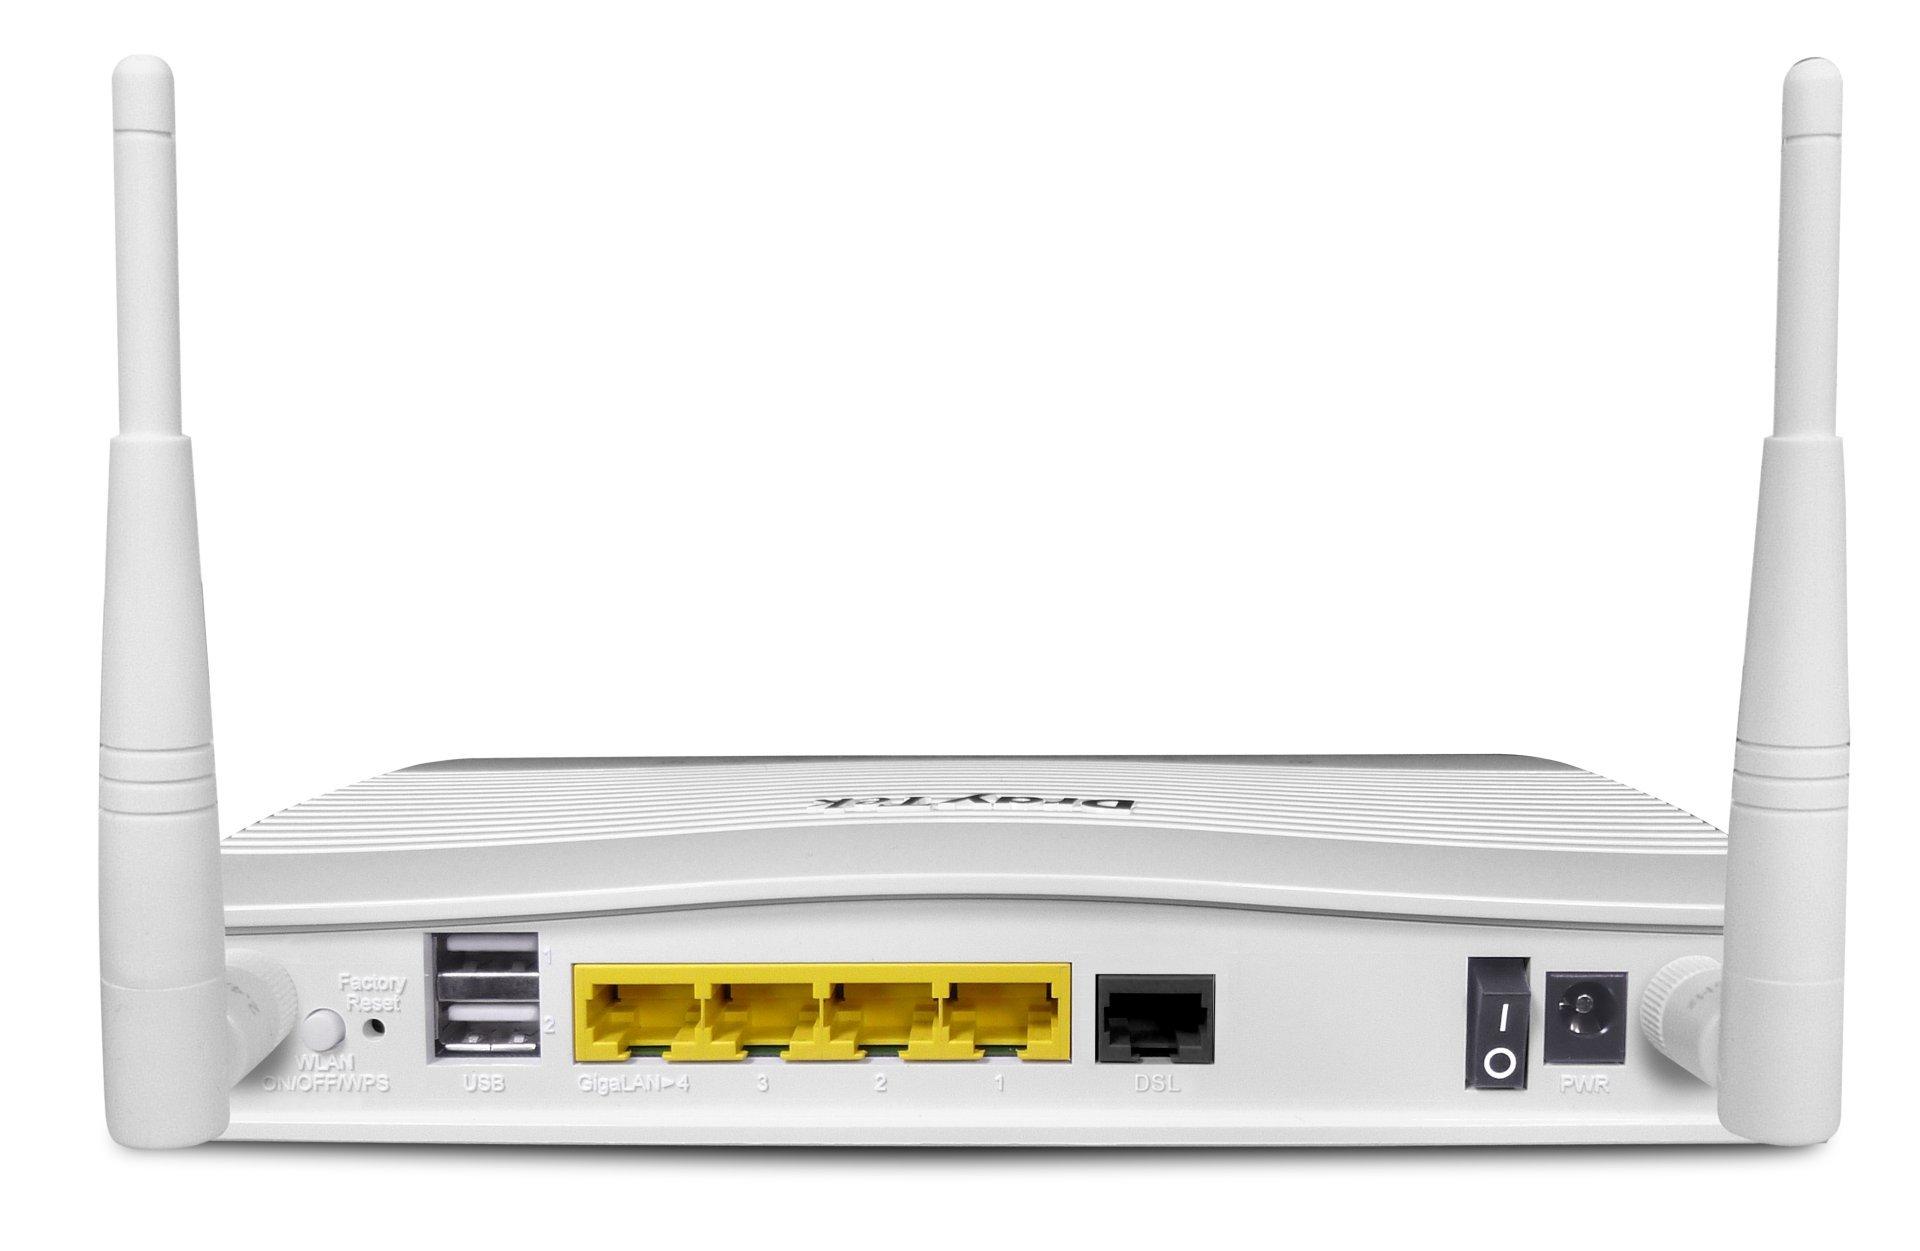 draytek-v2763ac-vdsl-wireless-router-back-image.jpg